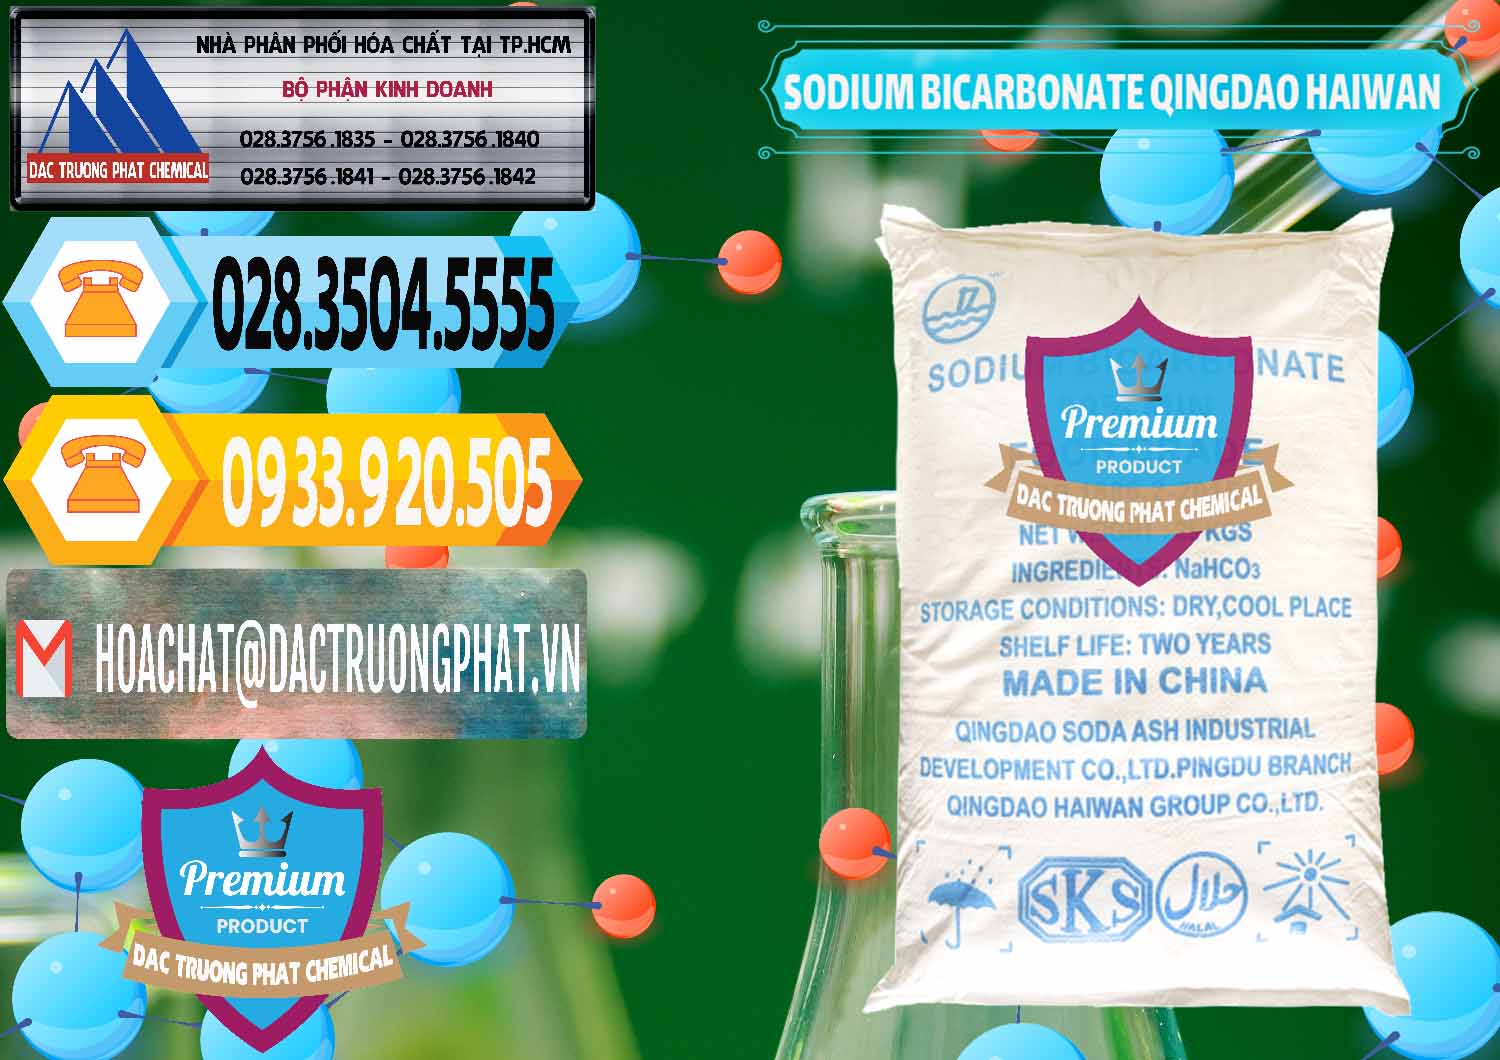 Đơn vị chuyên bán ( cung cấp ) Sodium Bicarbonate – Bicar NaHCO3 Food Grade Qingdao Haiwan Trung Quốc China - 0258 - Chuyên cung cấp - phân phối hóa chất tại TP.HCM - hoachattayrua.net